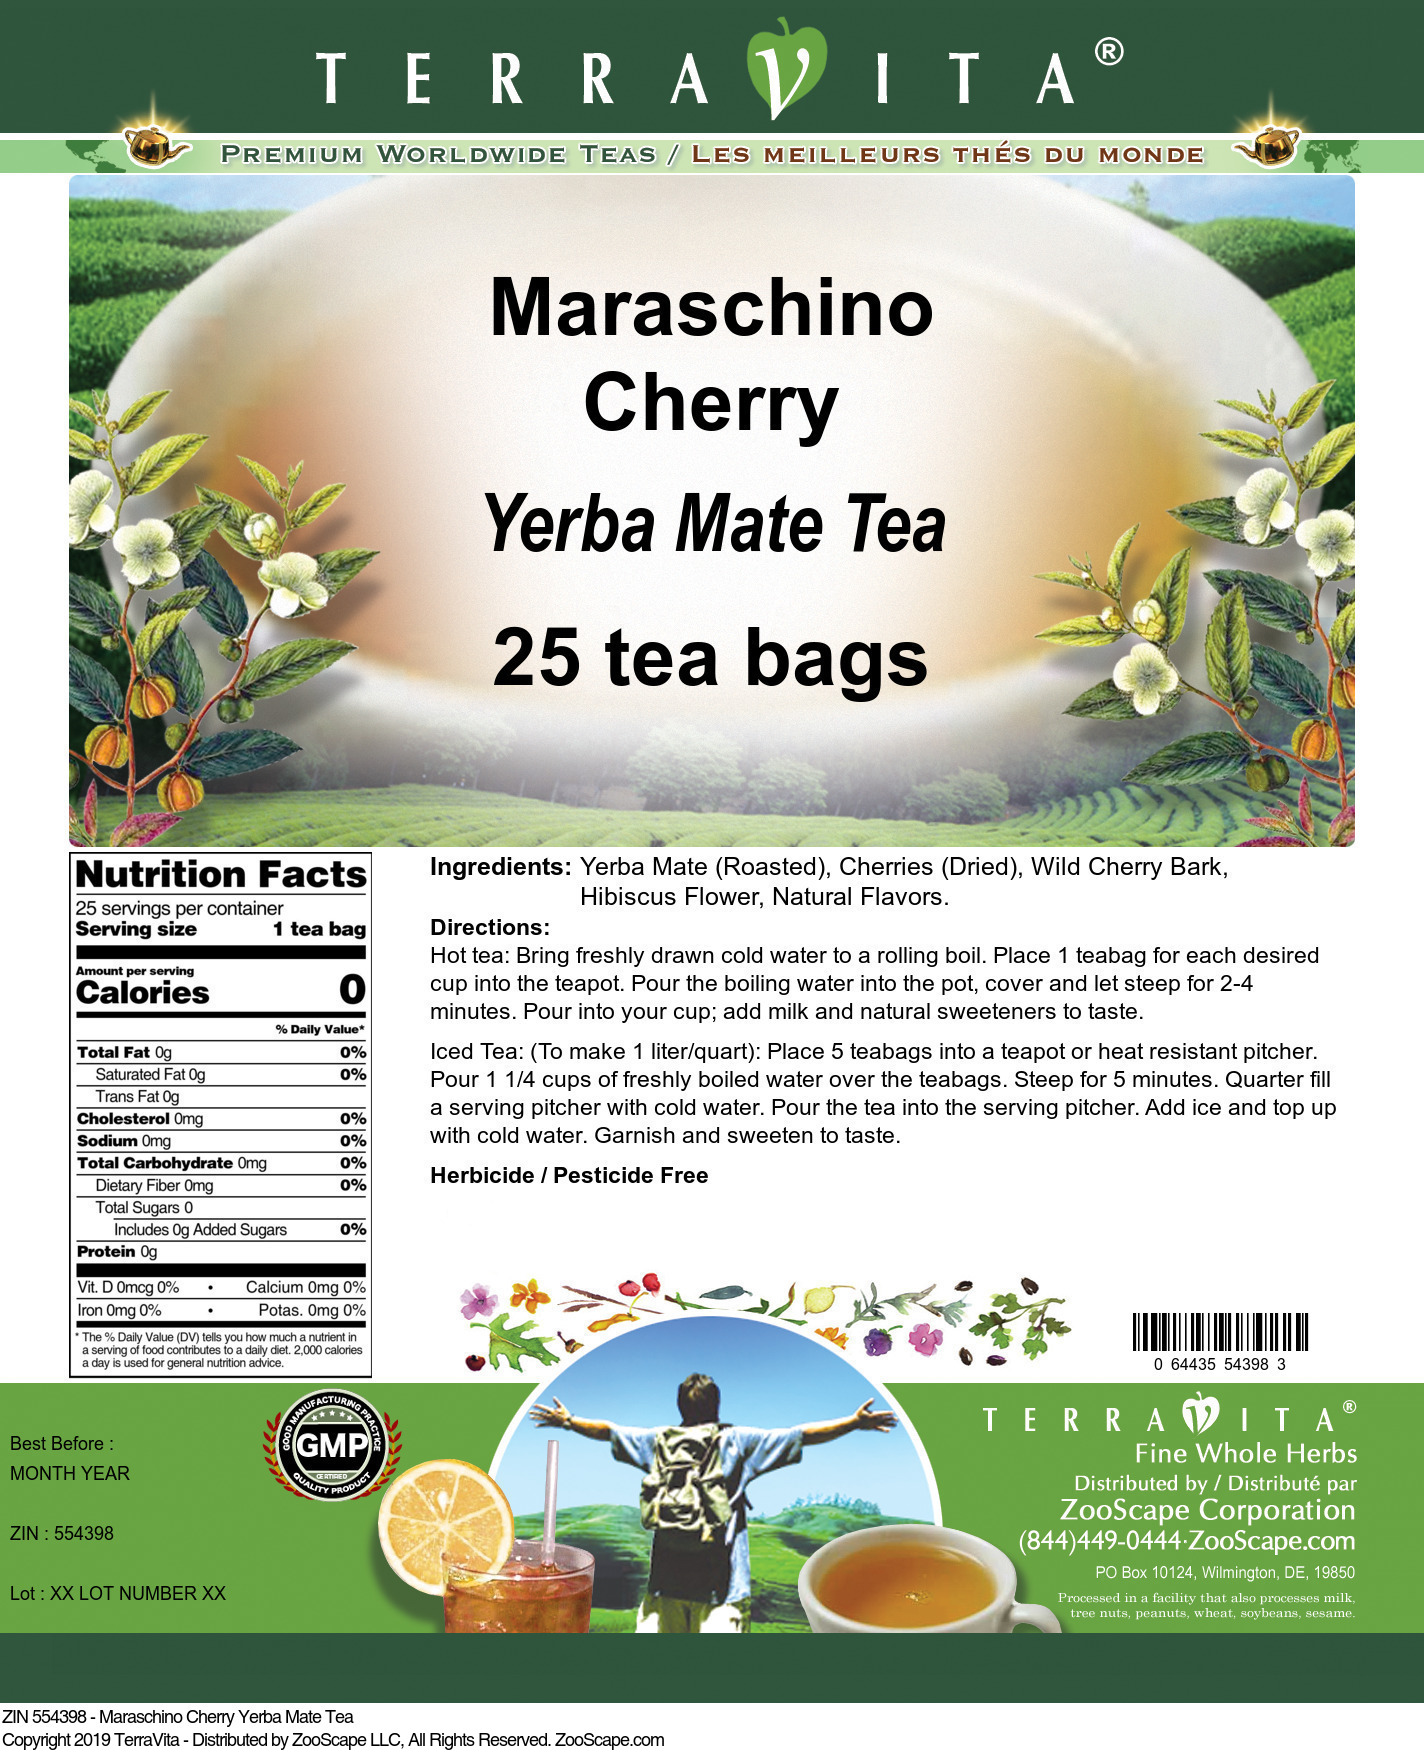 Maraschino Cherry Yerba Mate Tea - Label